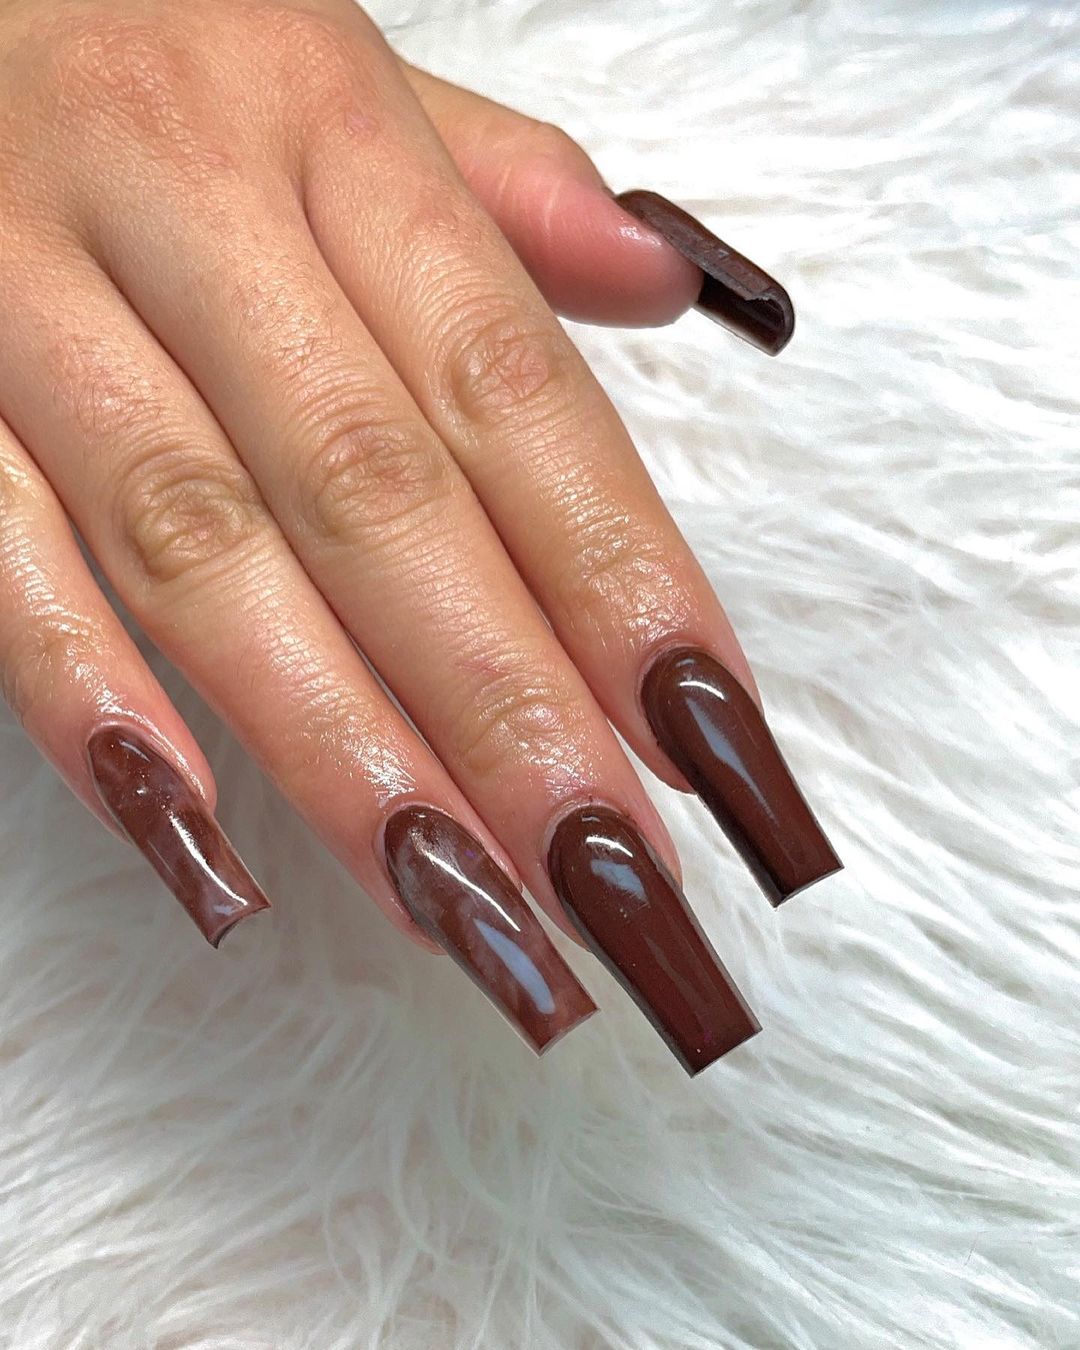 Chocolate Glazed Nails